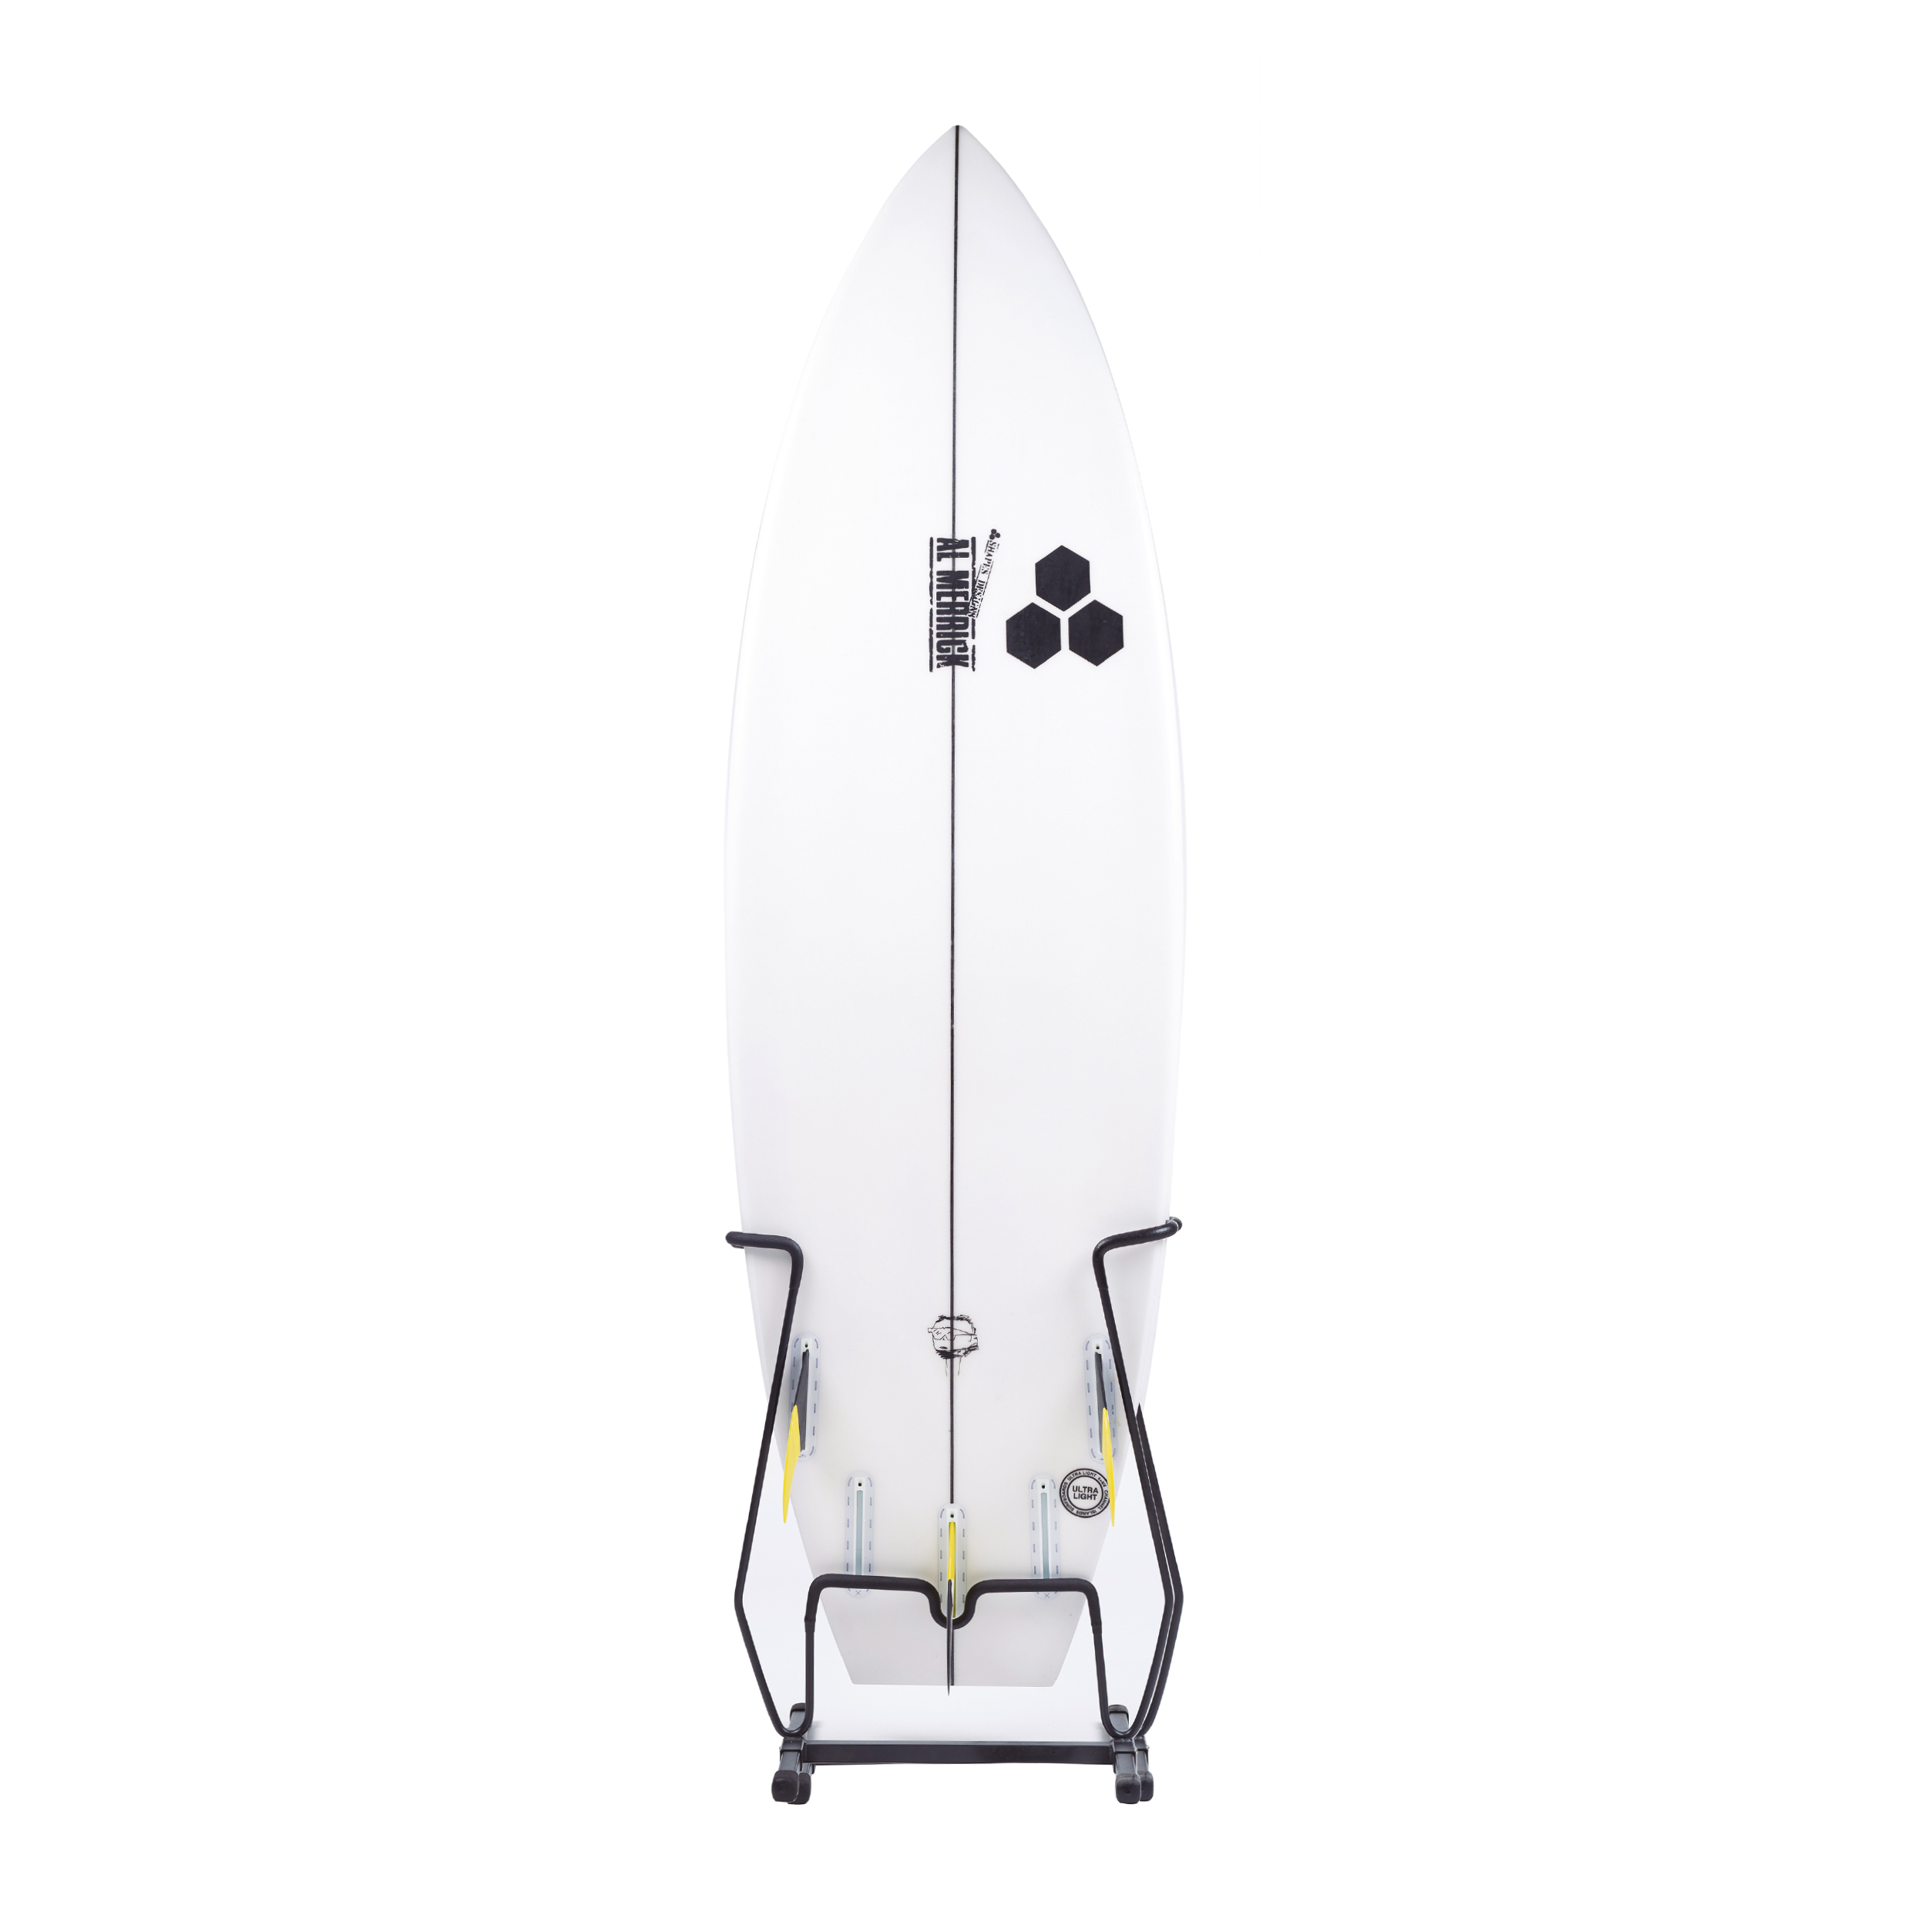 Soporte para tabla de surf a medida - Batlló Concept - Diseño y